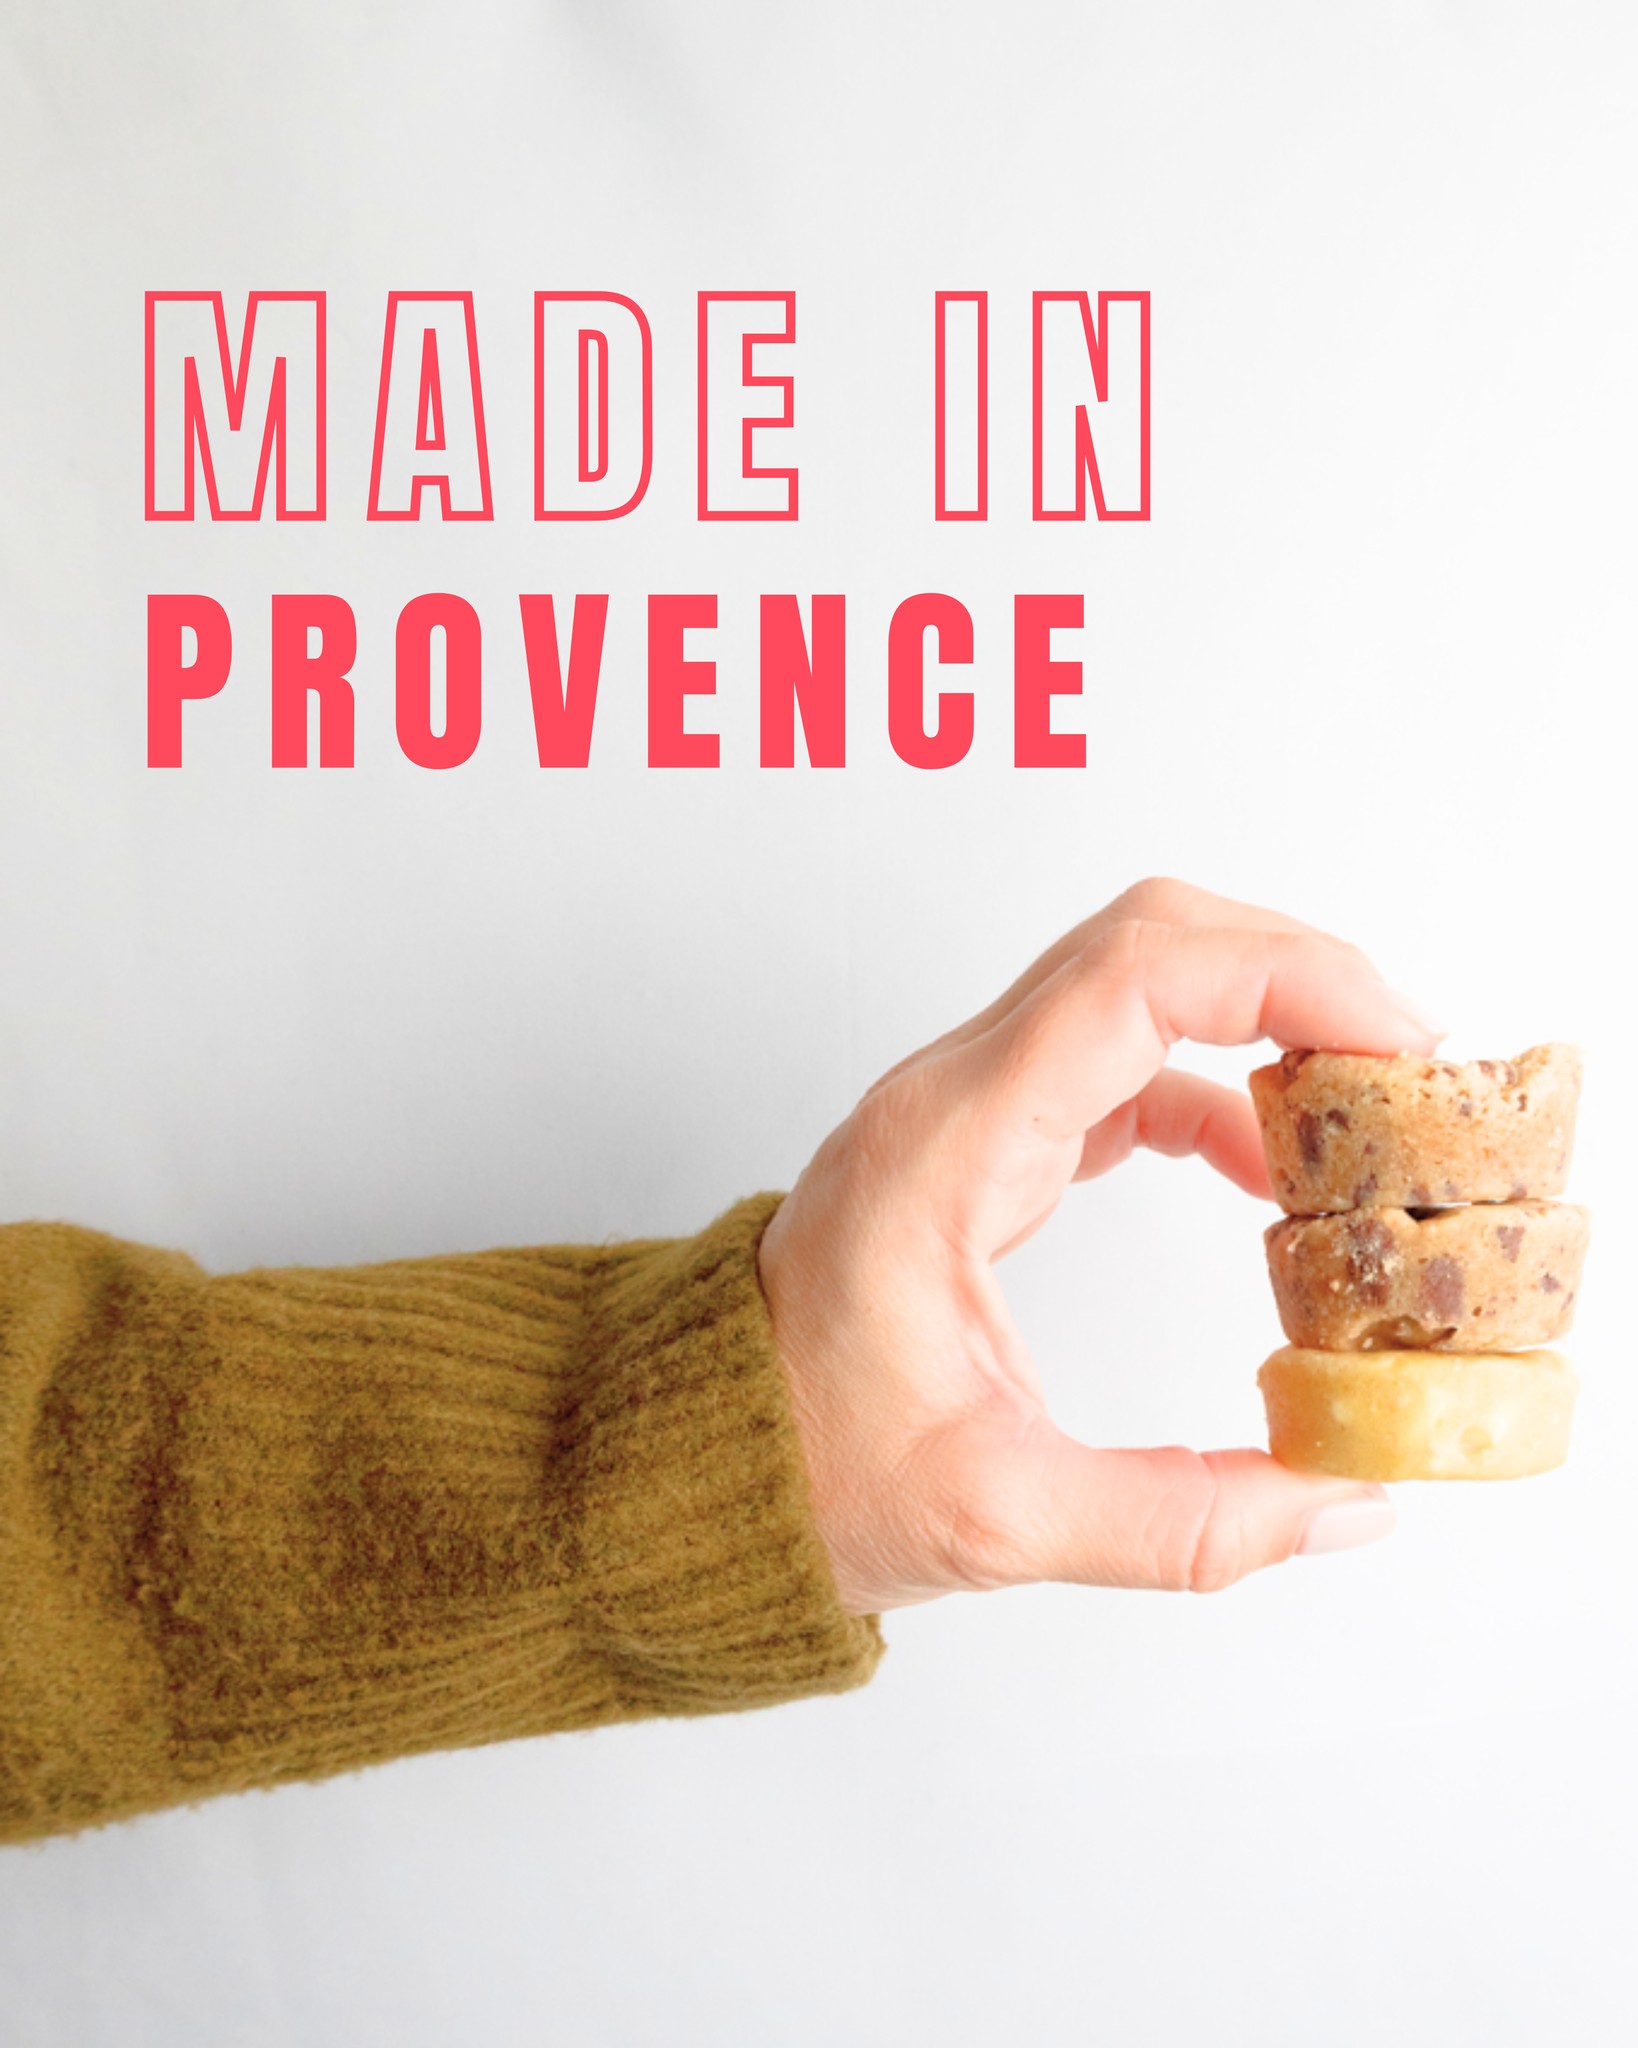 Oui oui,  vous aviez bien lu, nos cookies sont “made in Provence” 🌞🍋⛵️

L’atelier de Cookies Giraudon est situé à Gémenos, un village proche de Marseille. 

Si vous venez dans les parages, goûter un de nos cookies ! 🍪 

🍪 Faits maison à Gémenos (13)
📍Disponibles dans plusieurs points de vente
💌 Plus d’infos sur notre site web (lien dans notre bio)

#CookiesGiraudon  #CookiesAvecAmour  #GourmandiseAuthentique #homemadewithlove #CookiesArtisanaux #FaitAvecAmour #Gémenos #CuisineArtisanale #marseille #Provence #MadeInFrance